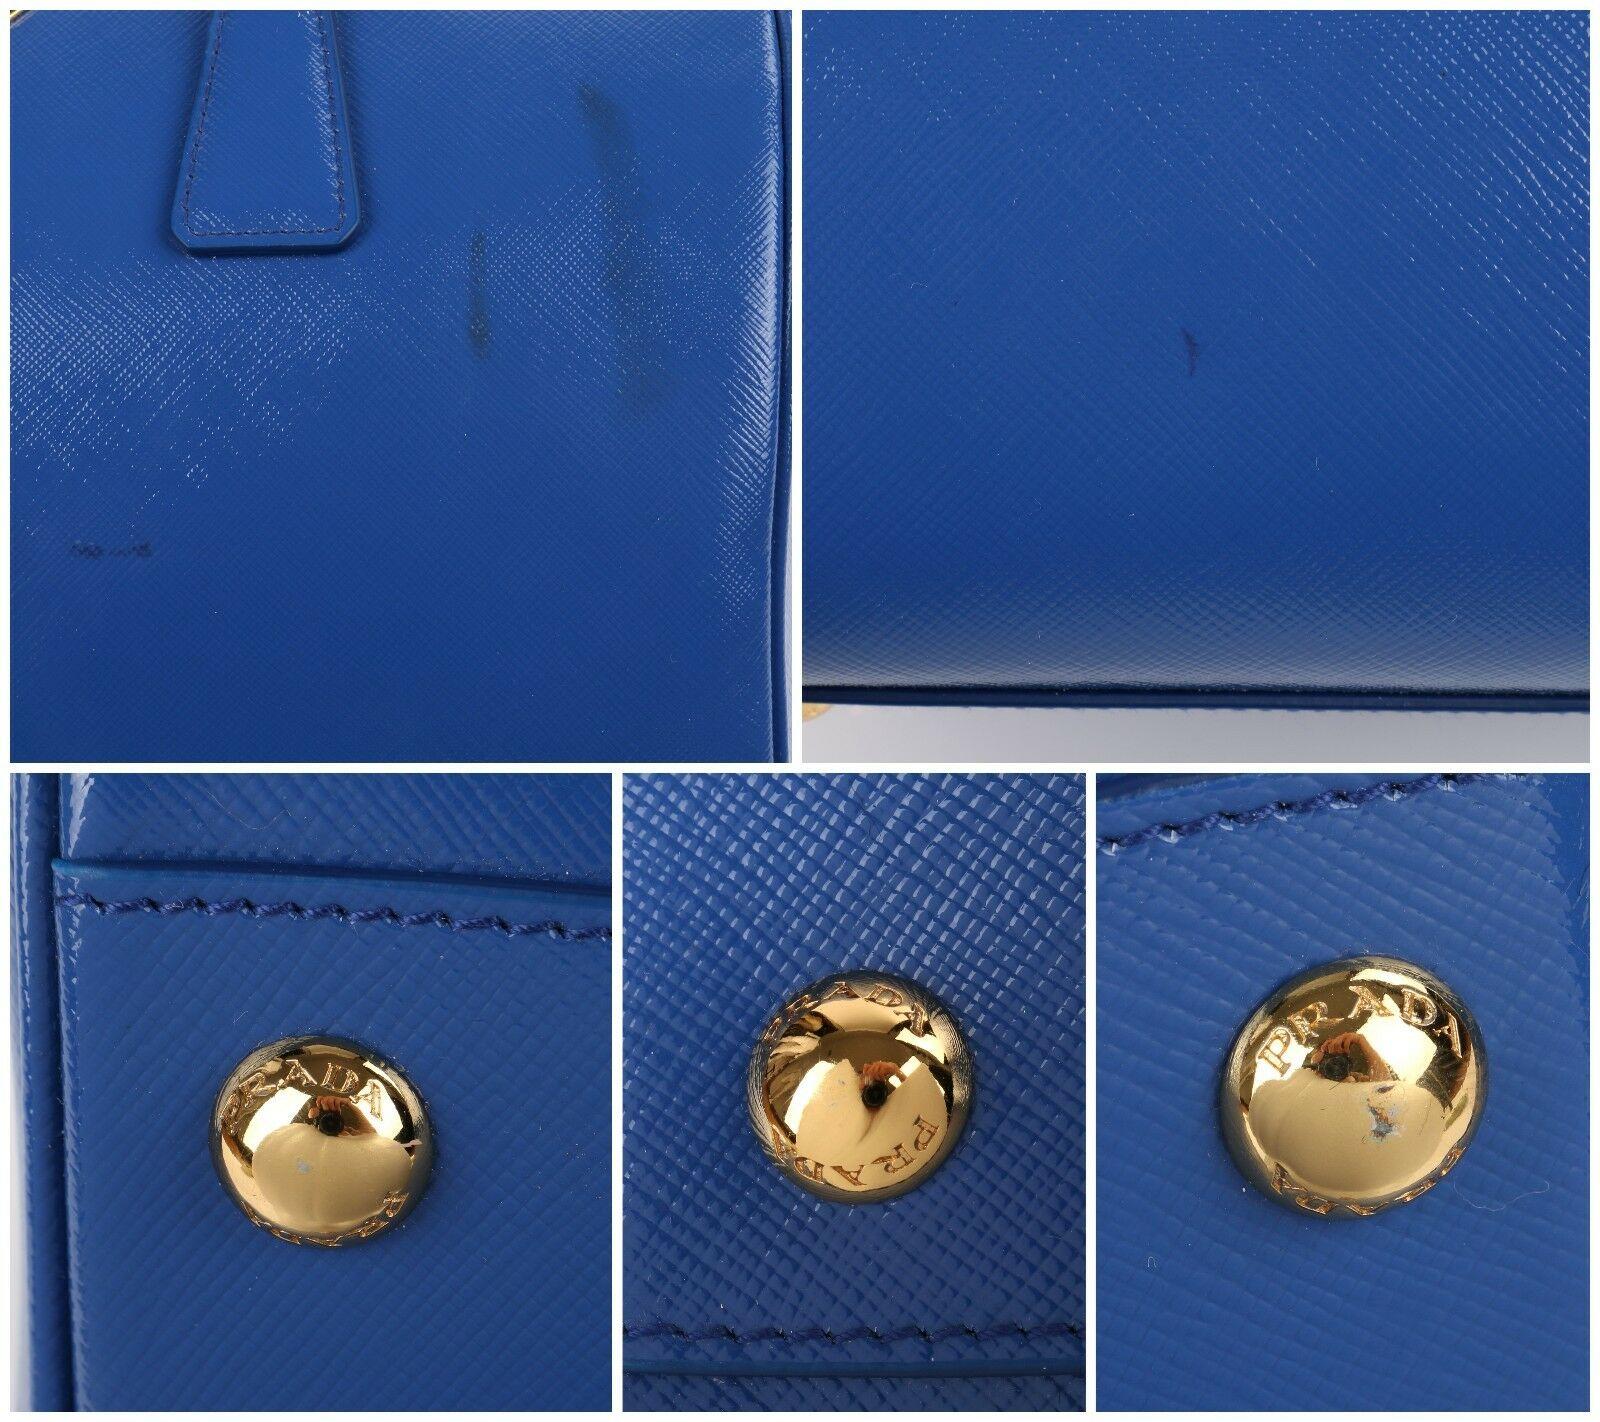 PRADA S/S 2012 Blue Saffiano Vernice Patent Leather Convertible Boston Bag Purse 3